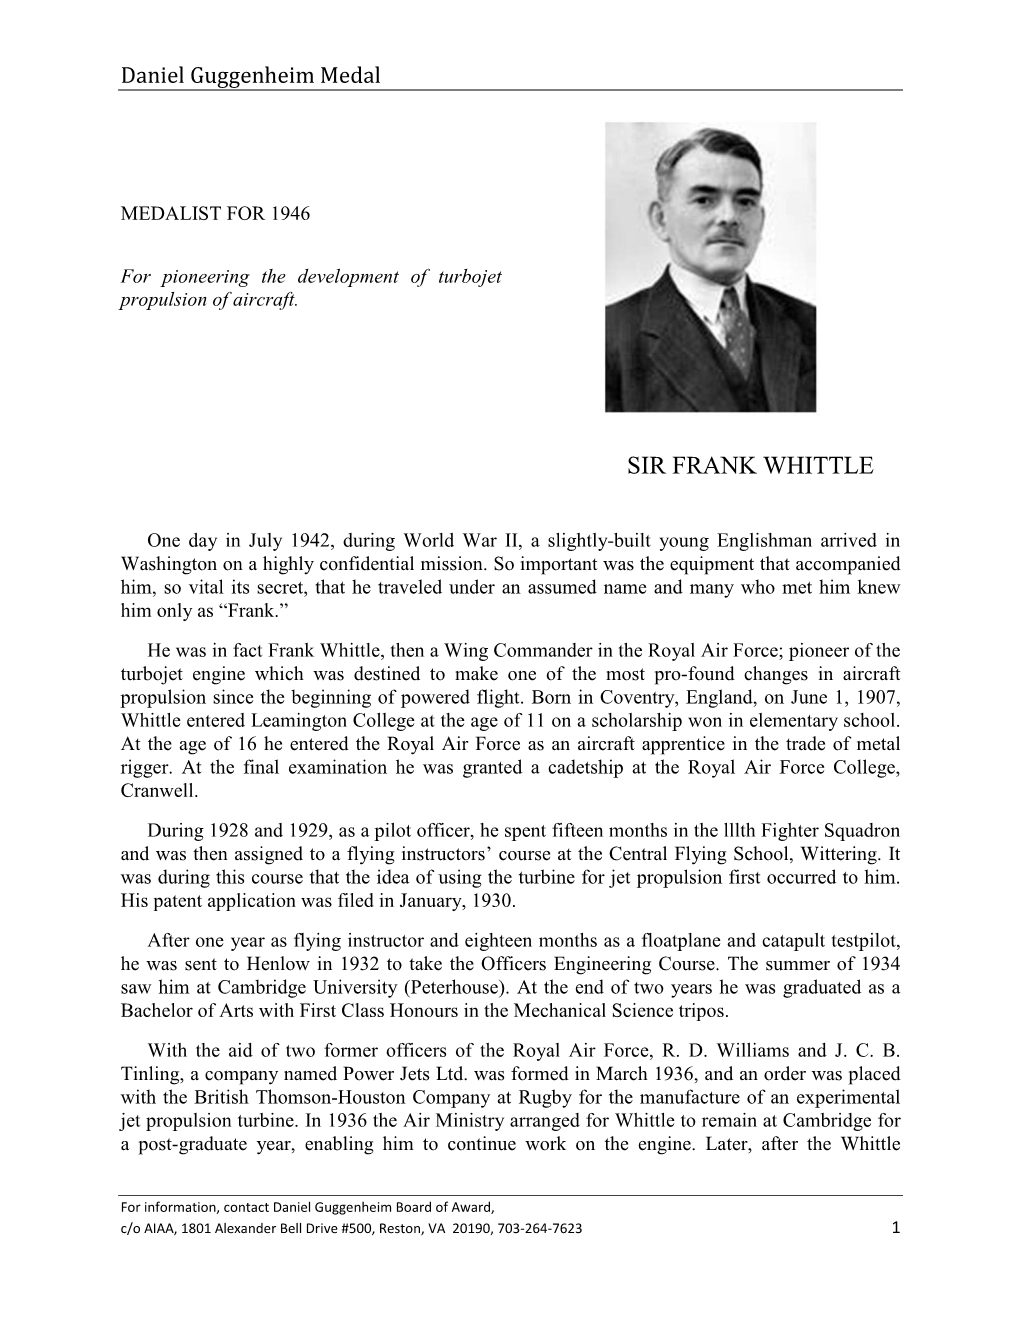 Sir Frank Whittle